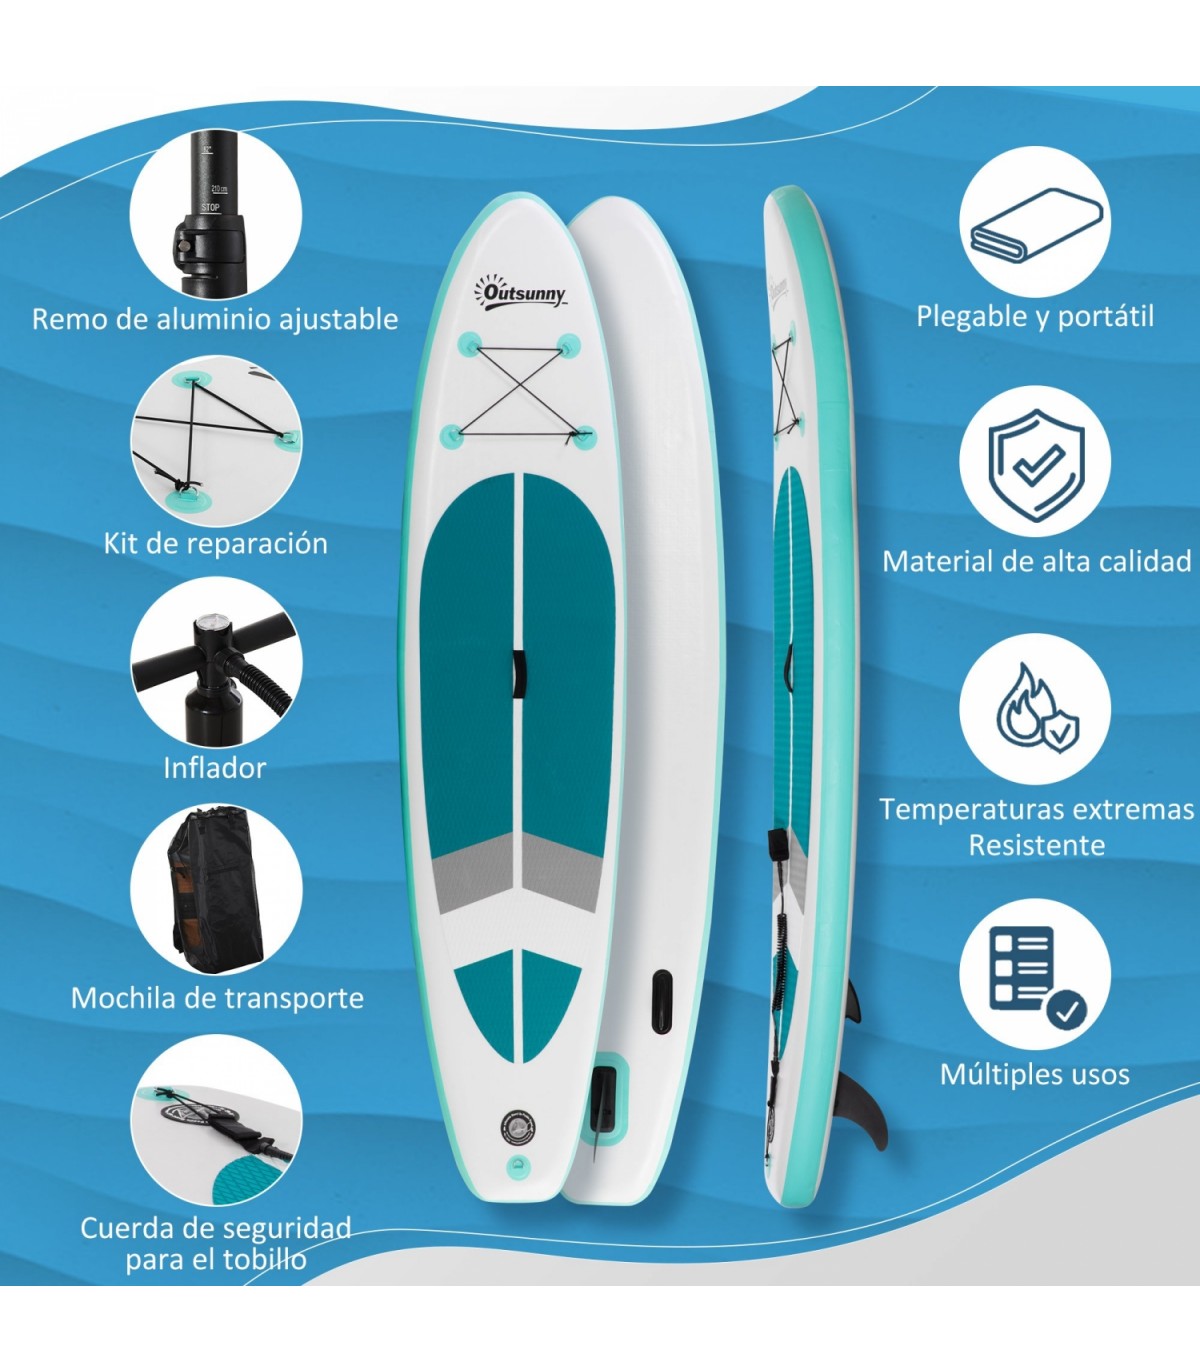 vidaXL Juego de tabla de paddle surf hinchable verde y blanco